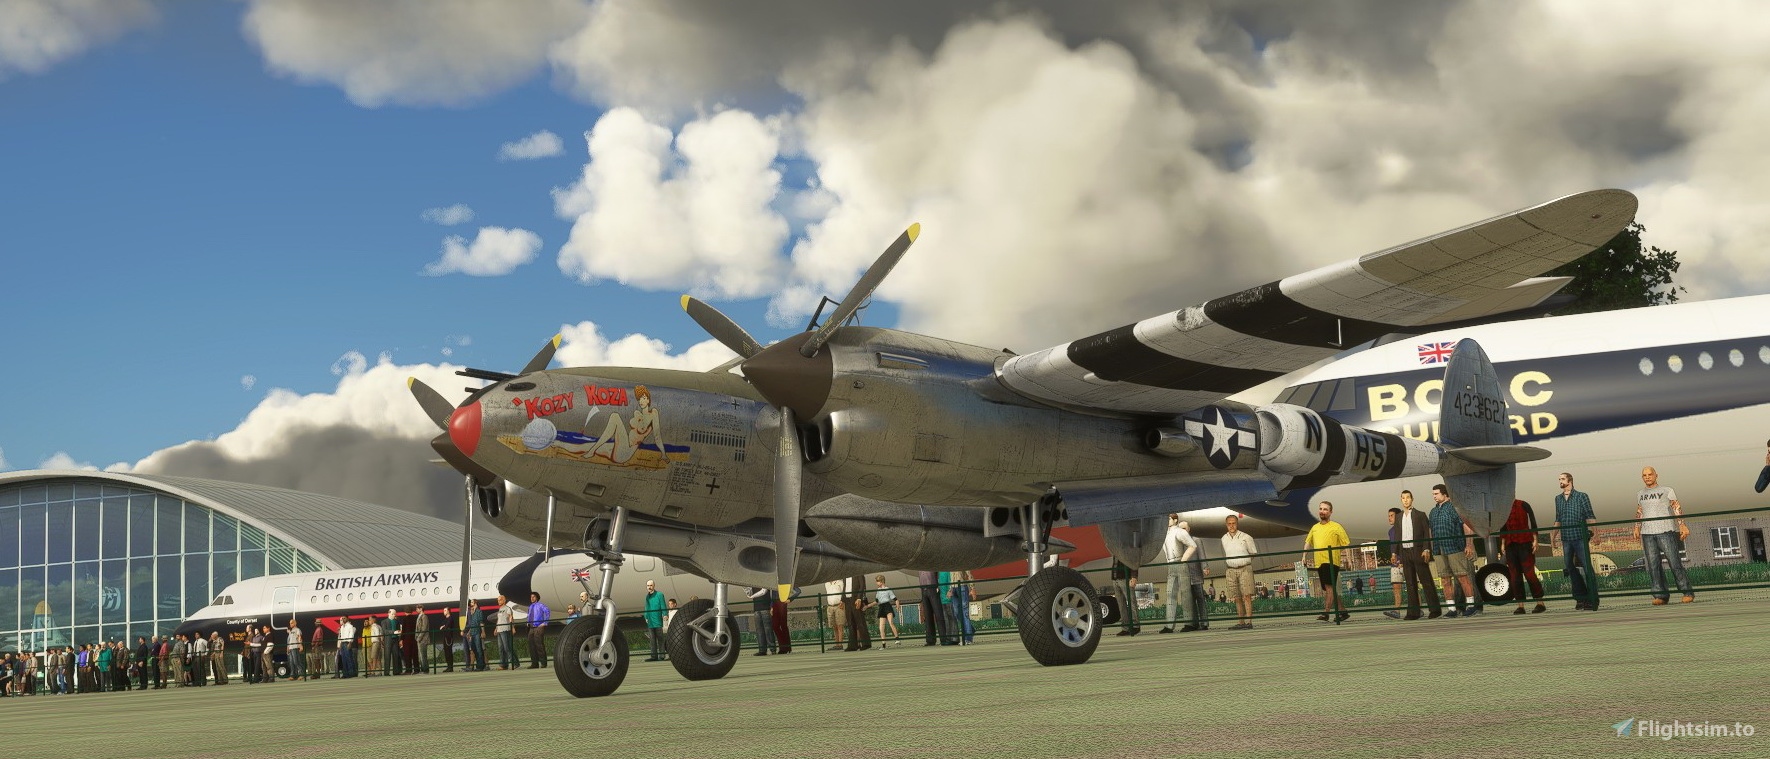 Lockheed P-38 